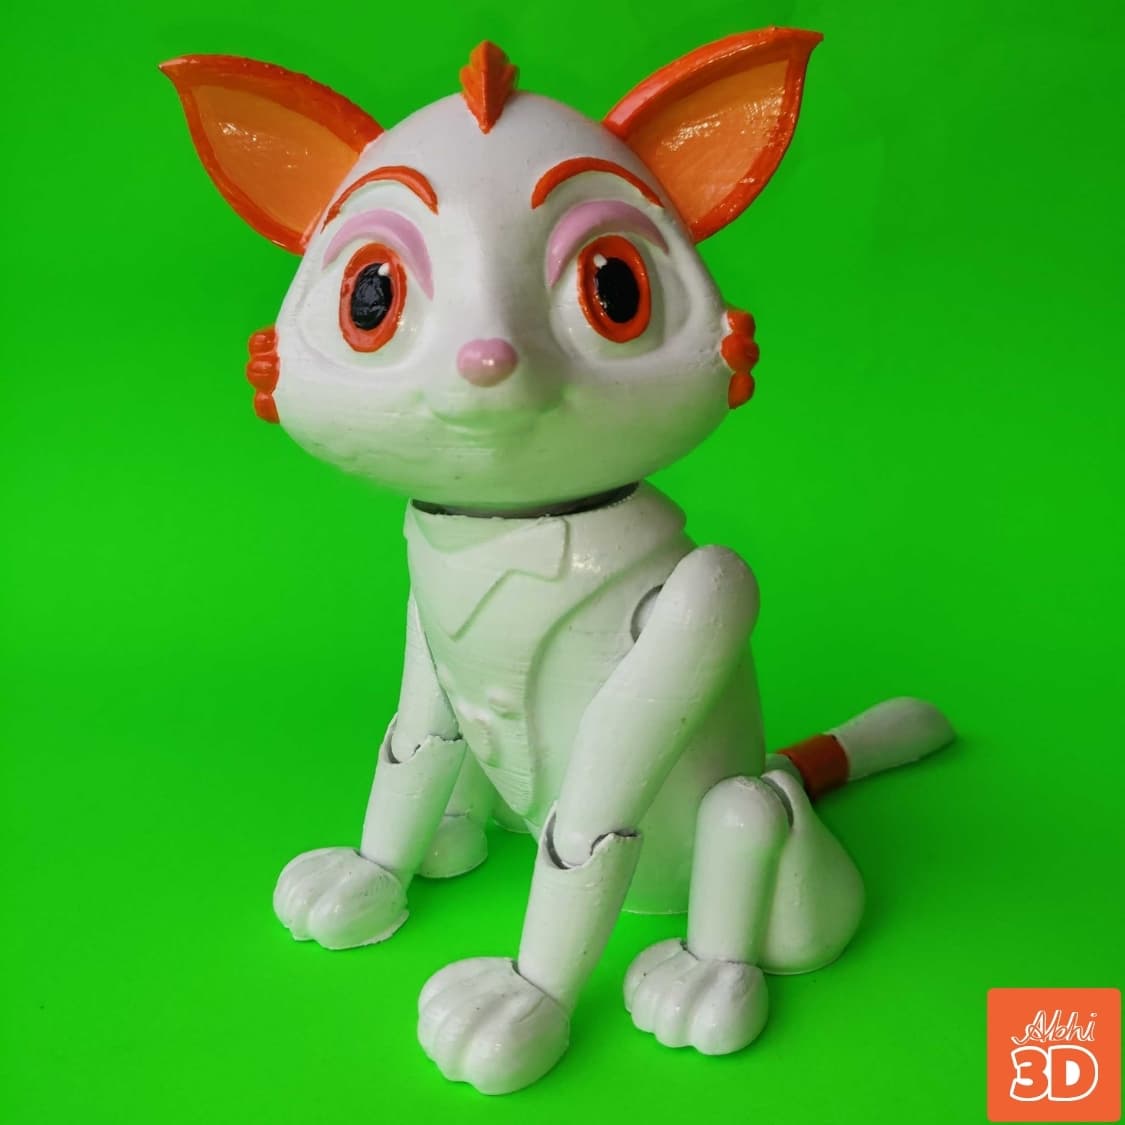 Cat STL File For 3D Printing